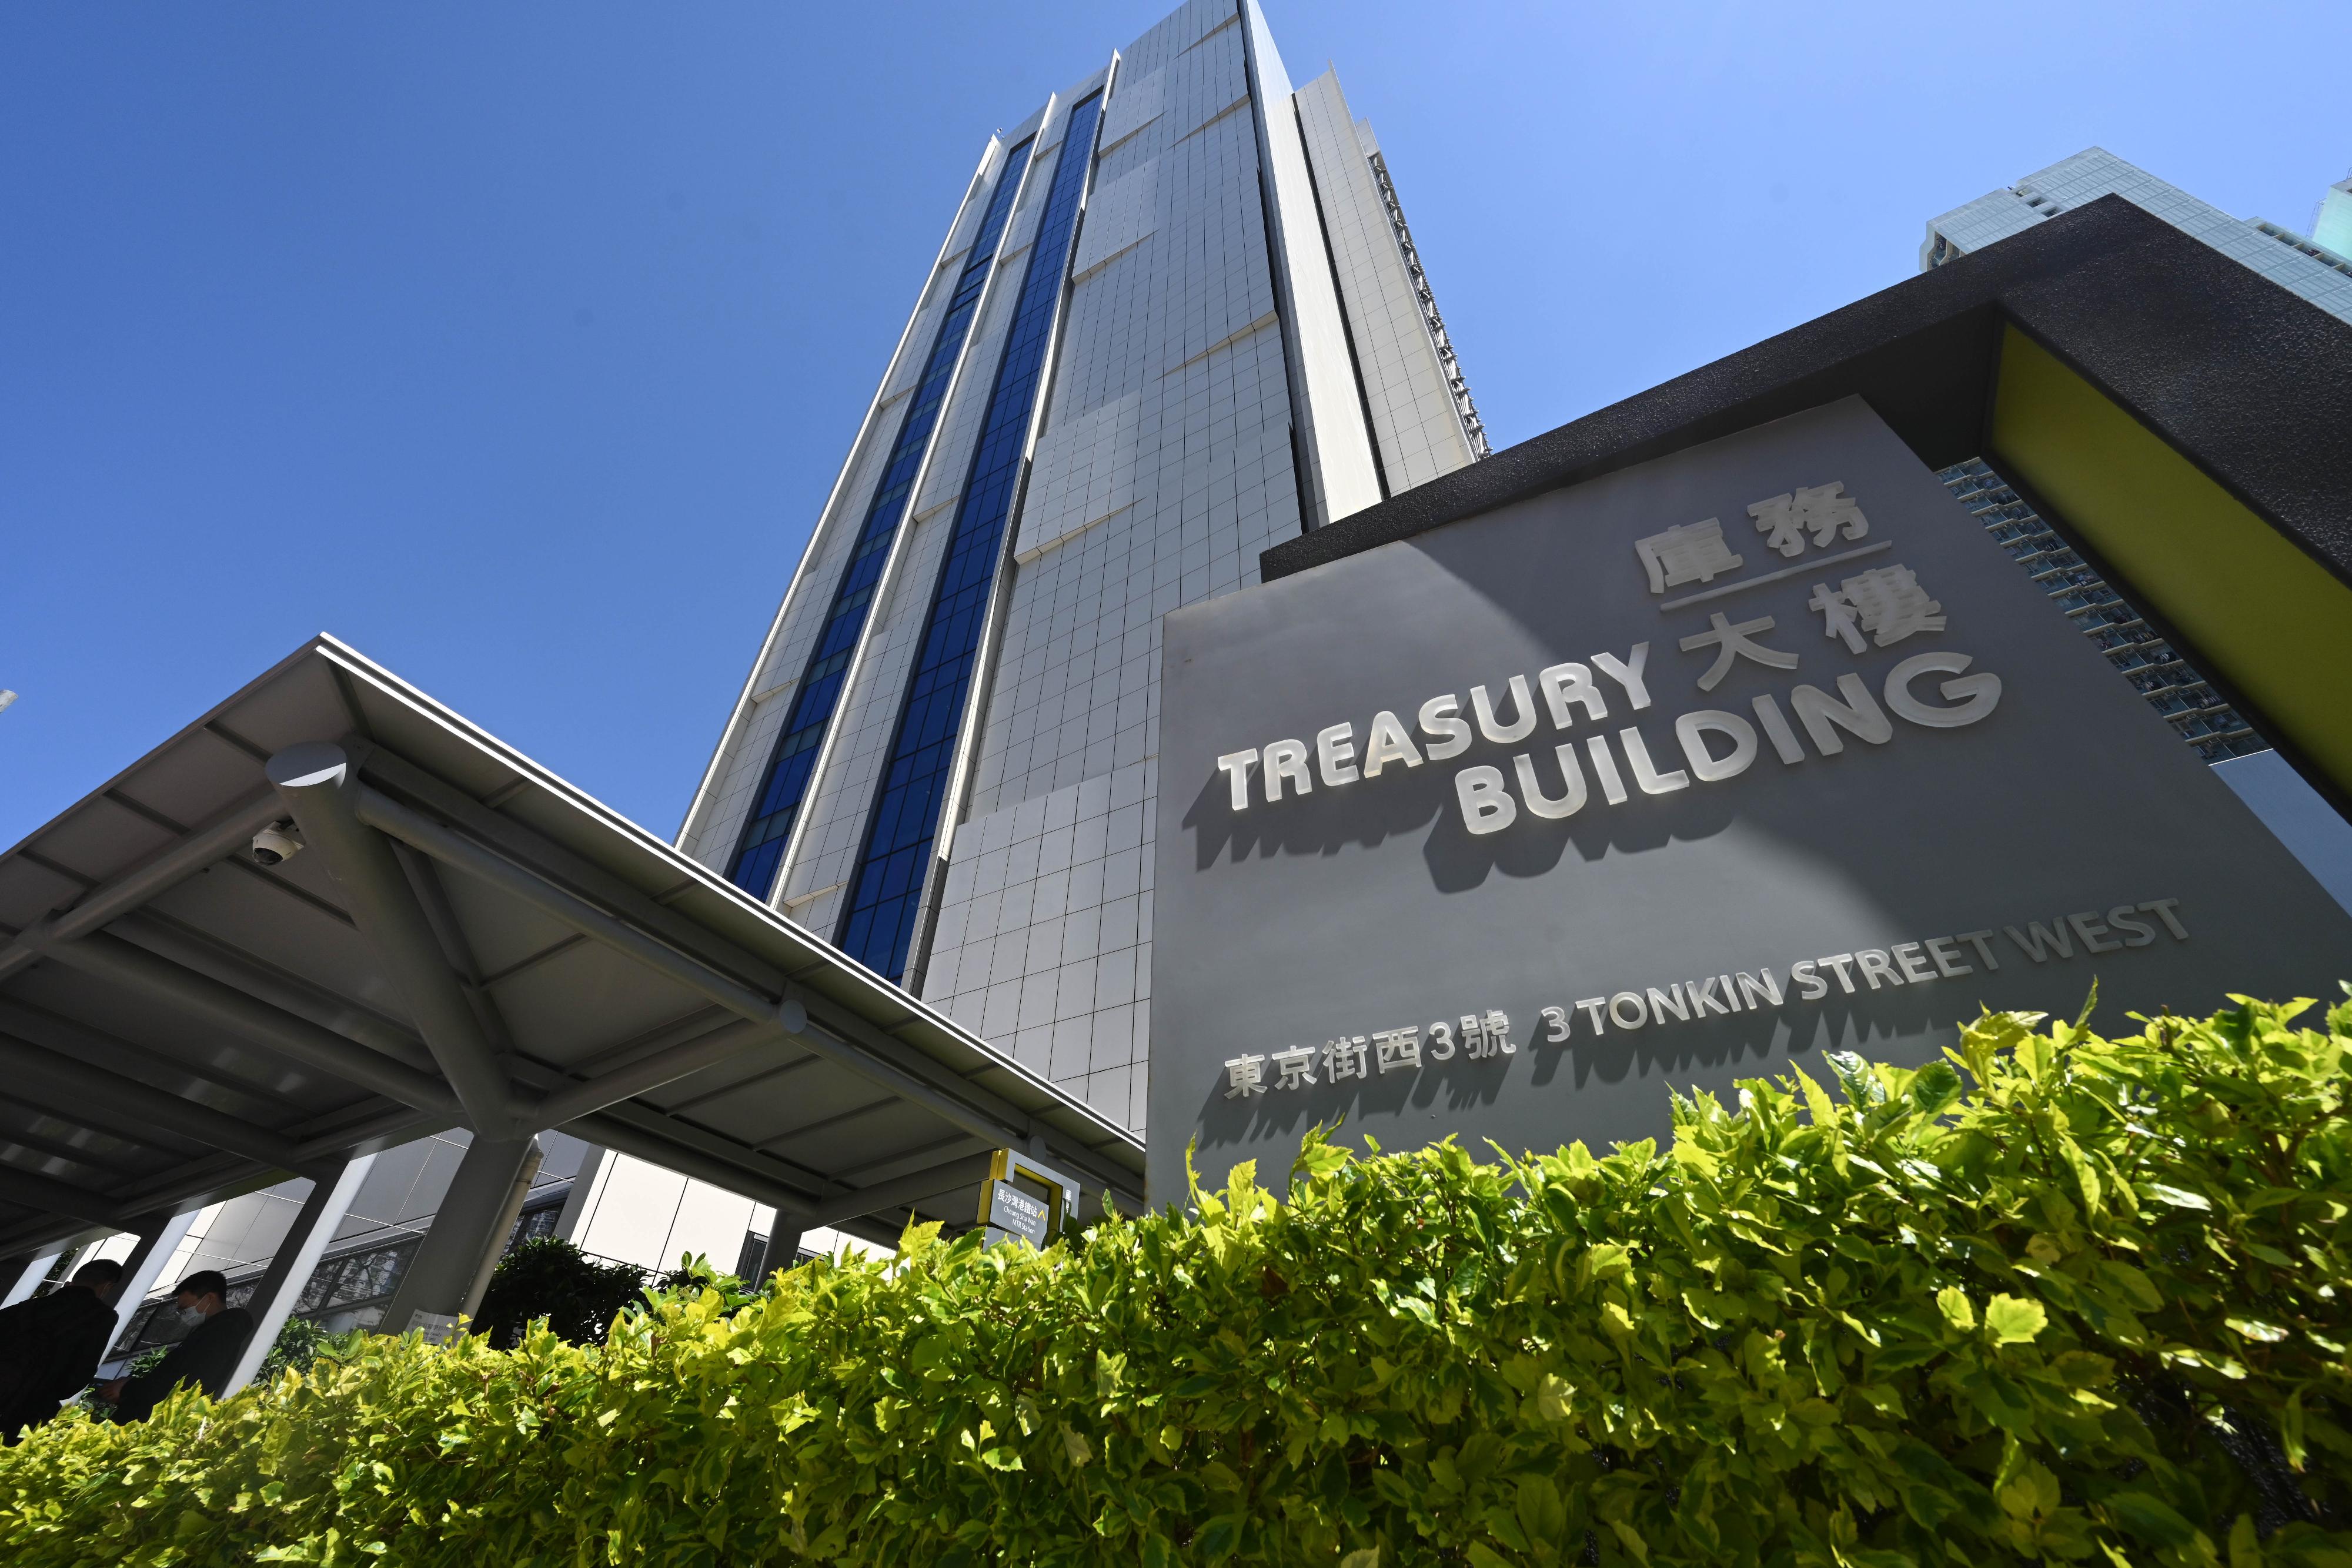 库务大楼位于长沙湾东京街西三号。大楼内除设立库务署和超过10个部门的办事处，亦设有不同社区设施。